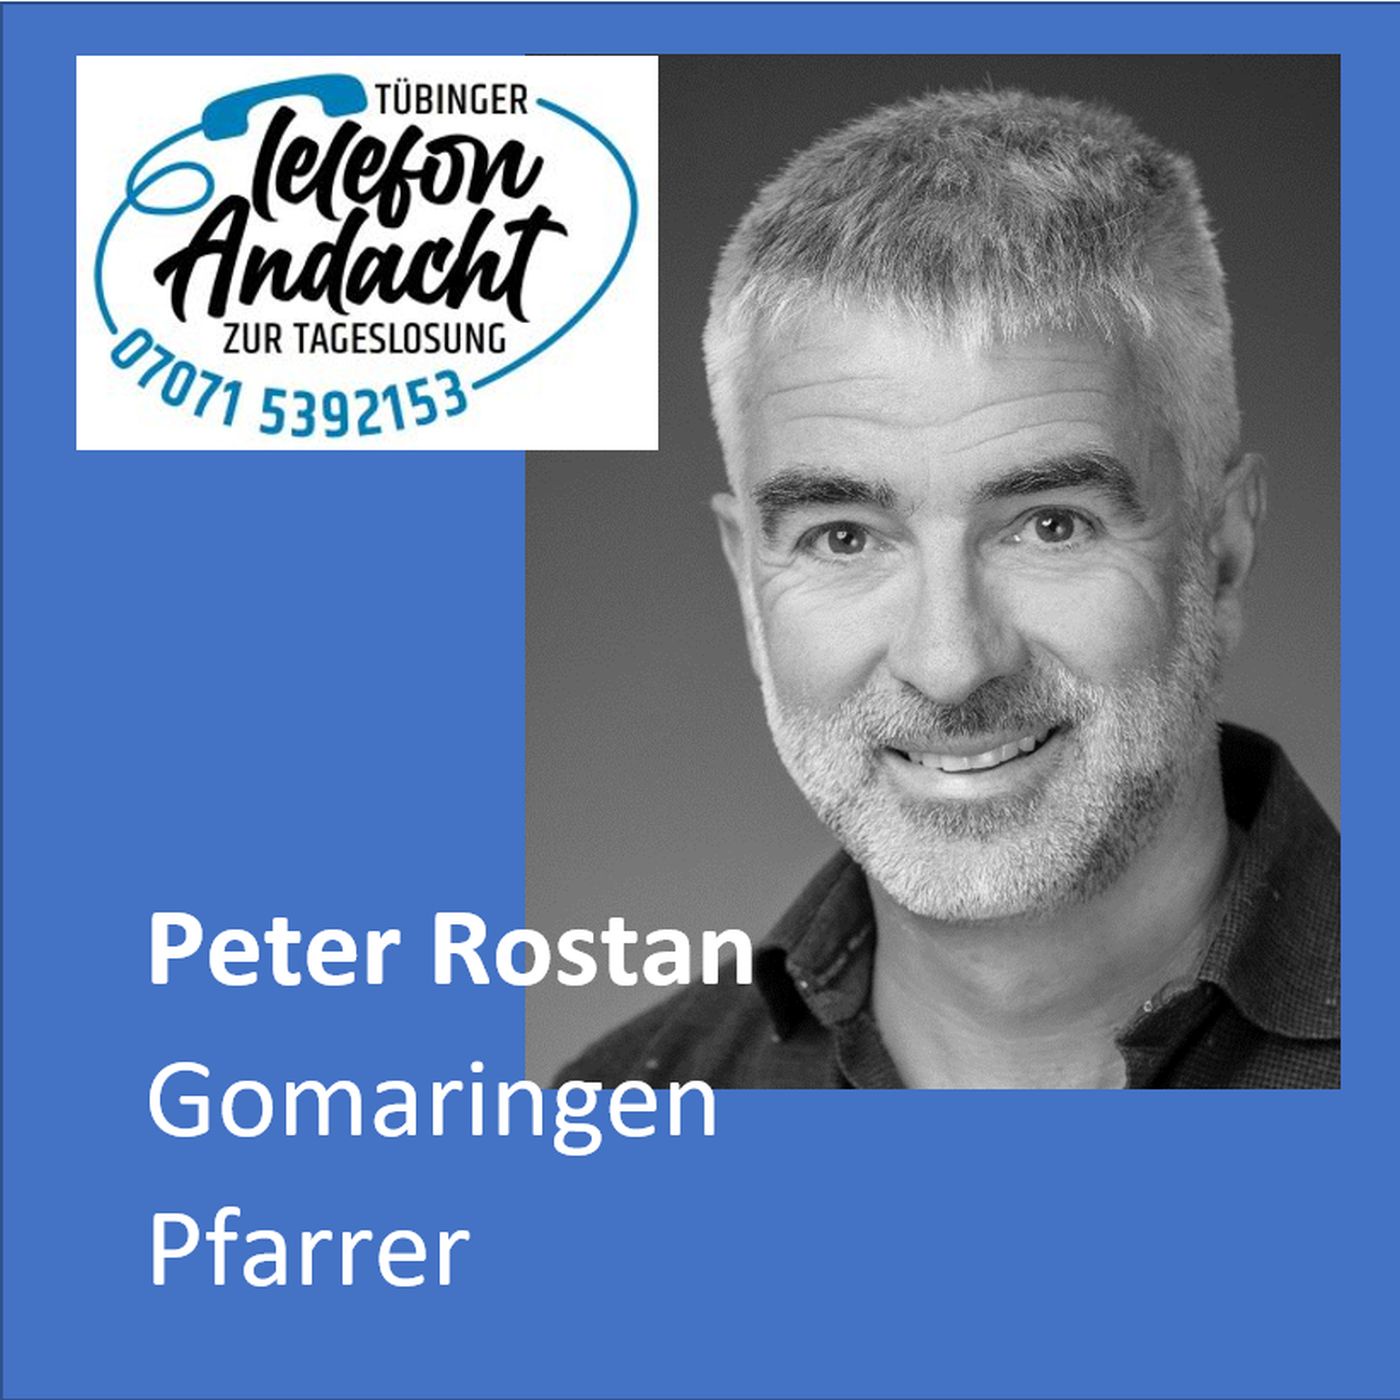 24 07 11 Peter Rostan